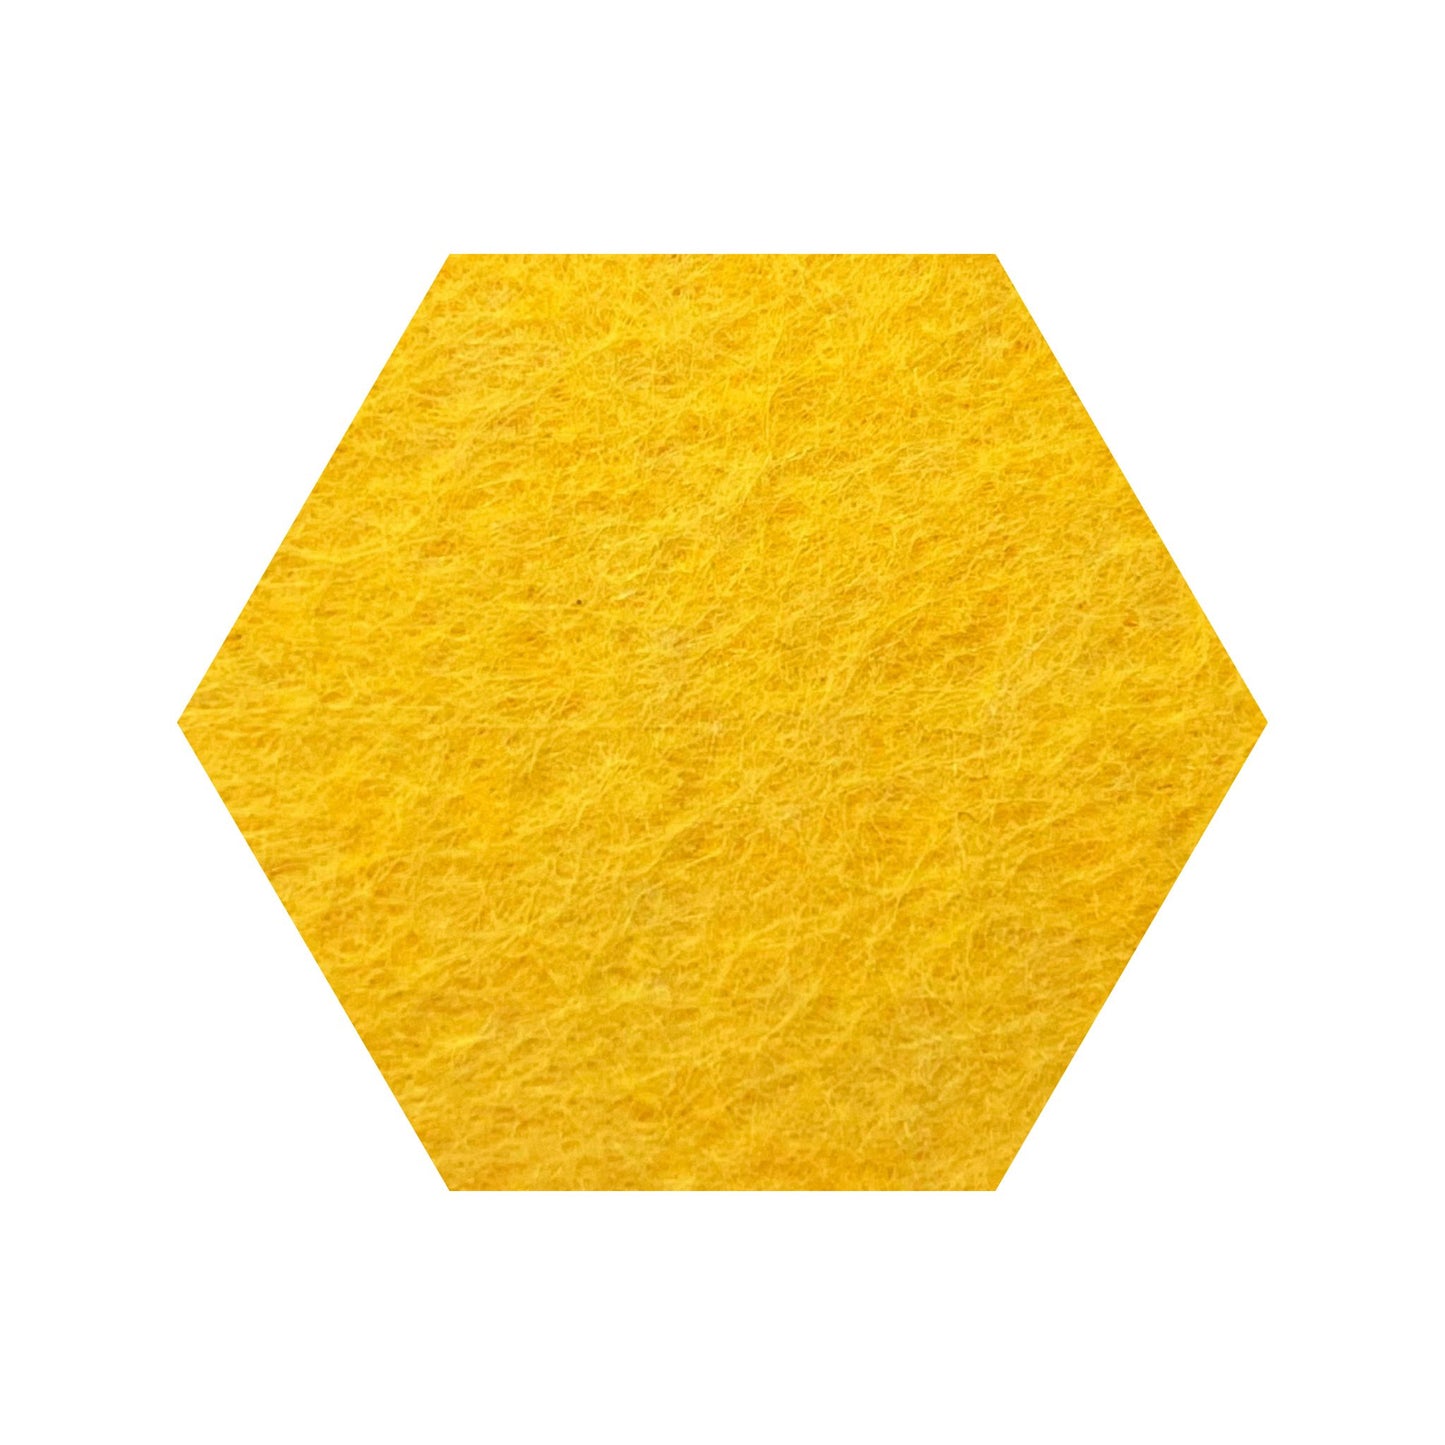 AQsorb akustik hexagon 30x26 cm - 3 stk